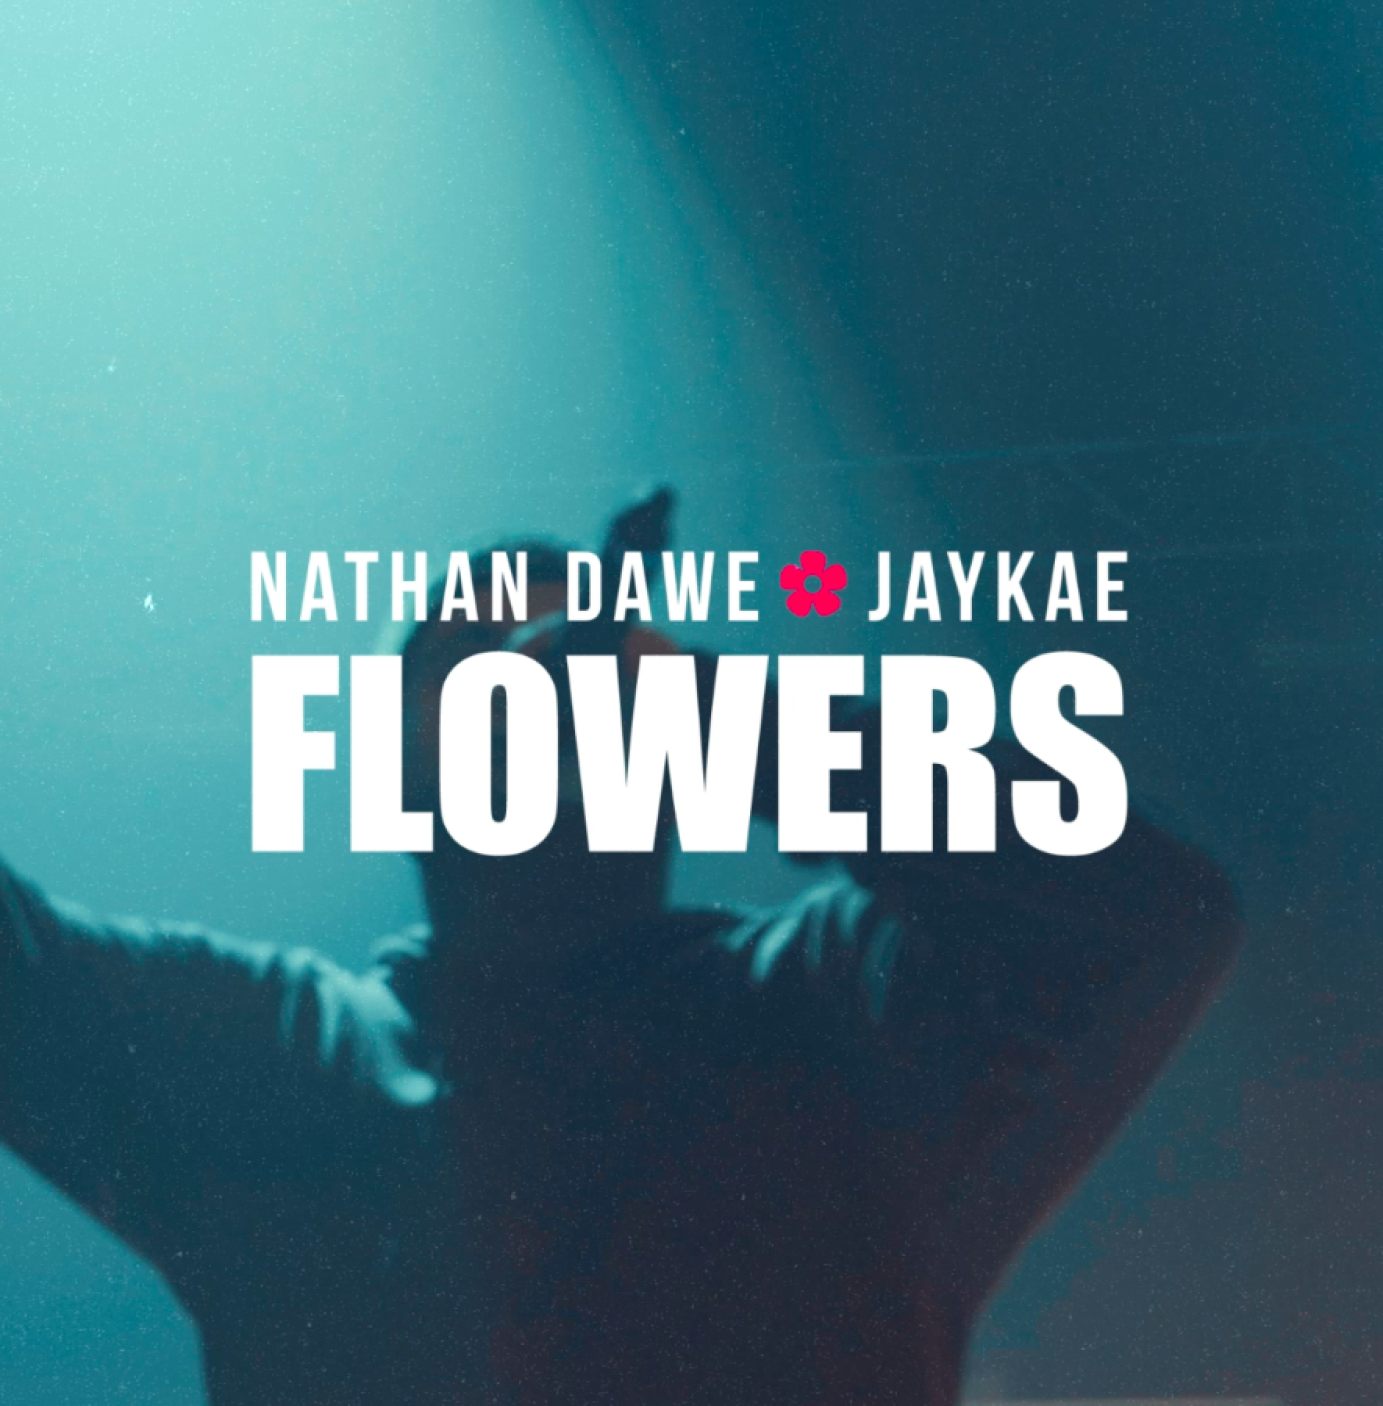 Nathan Dawe - Flowers ft Jaykae (Pre-Roll Ads)